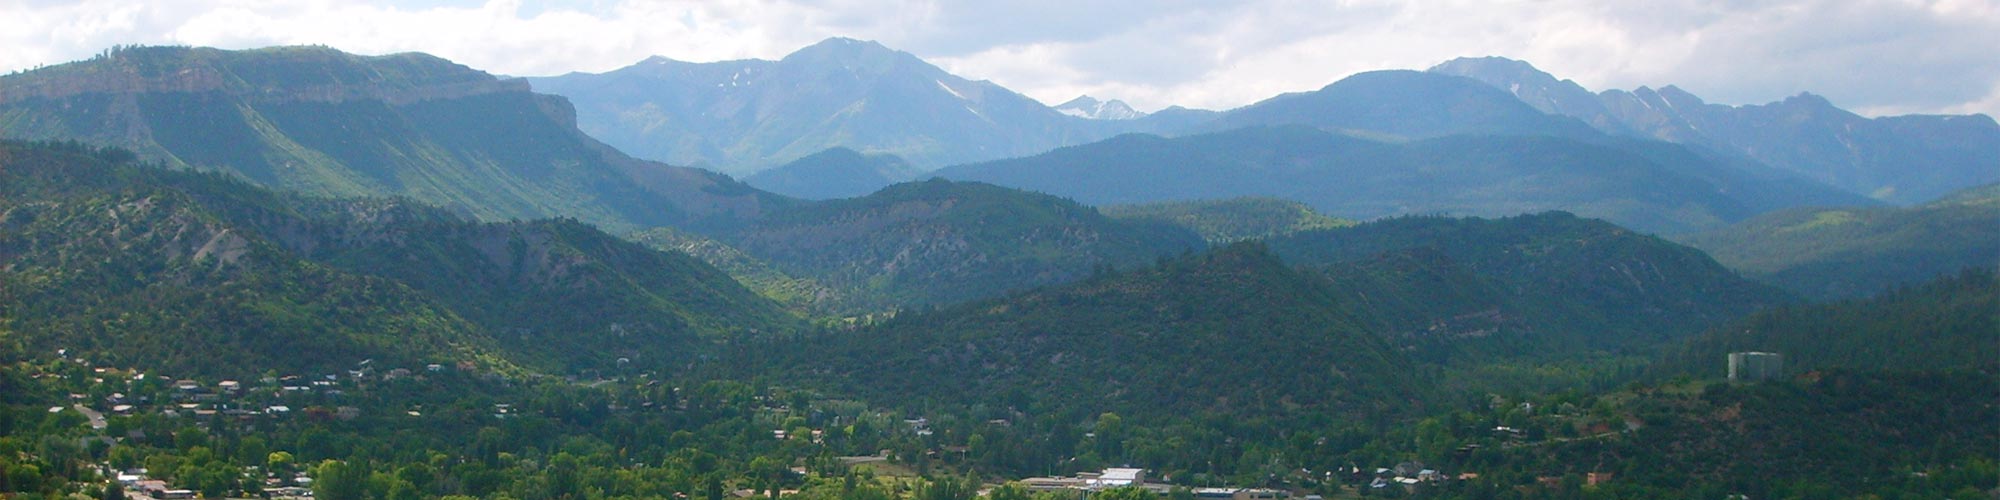 Skiing Attractions in Durango, Colorado